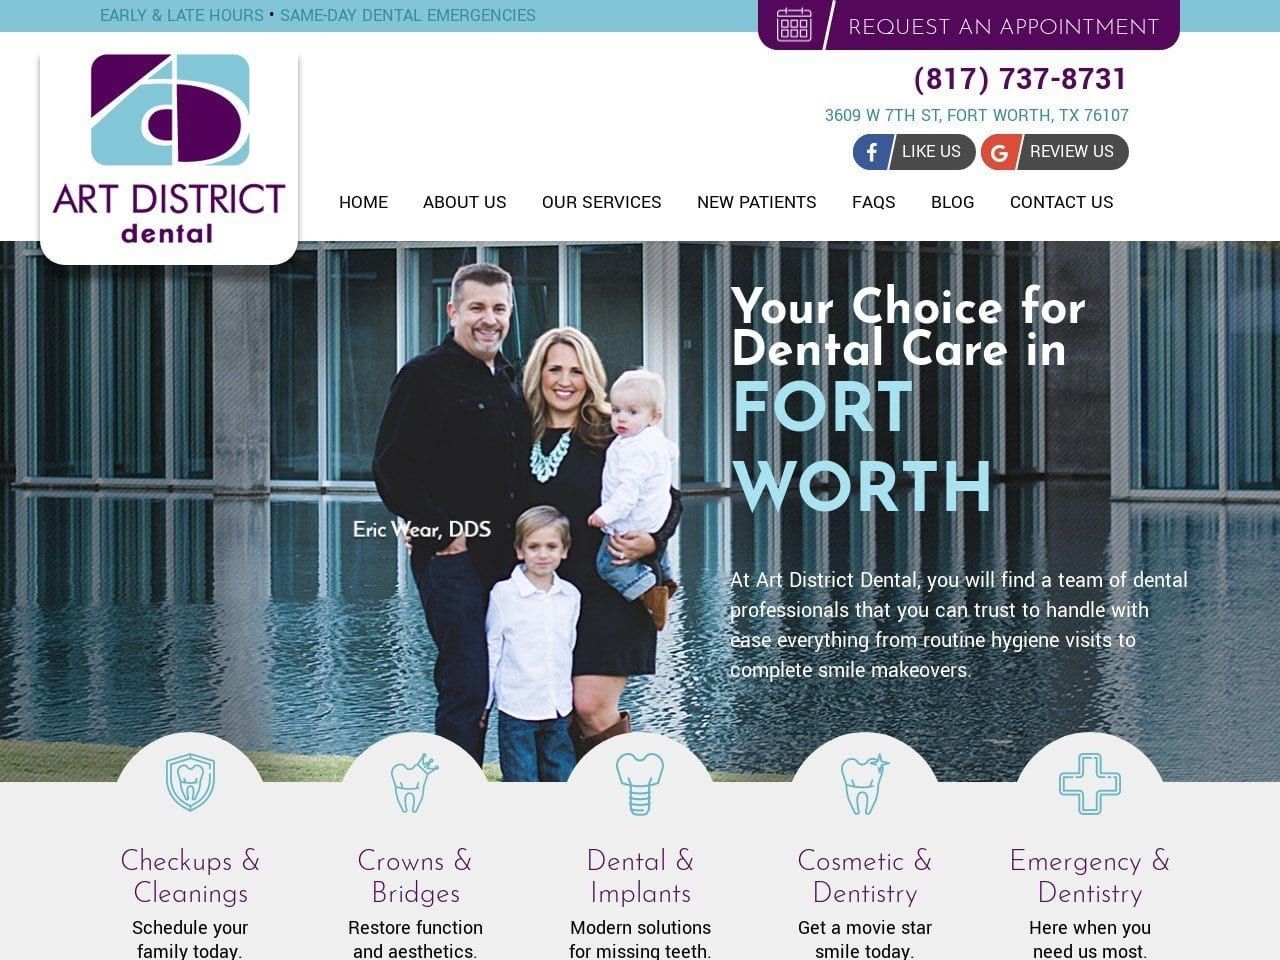 Art District Dental Website Screenshot from artdistrictdental.com